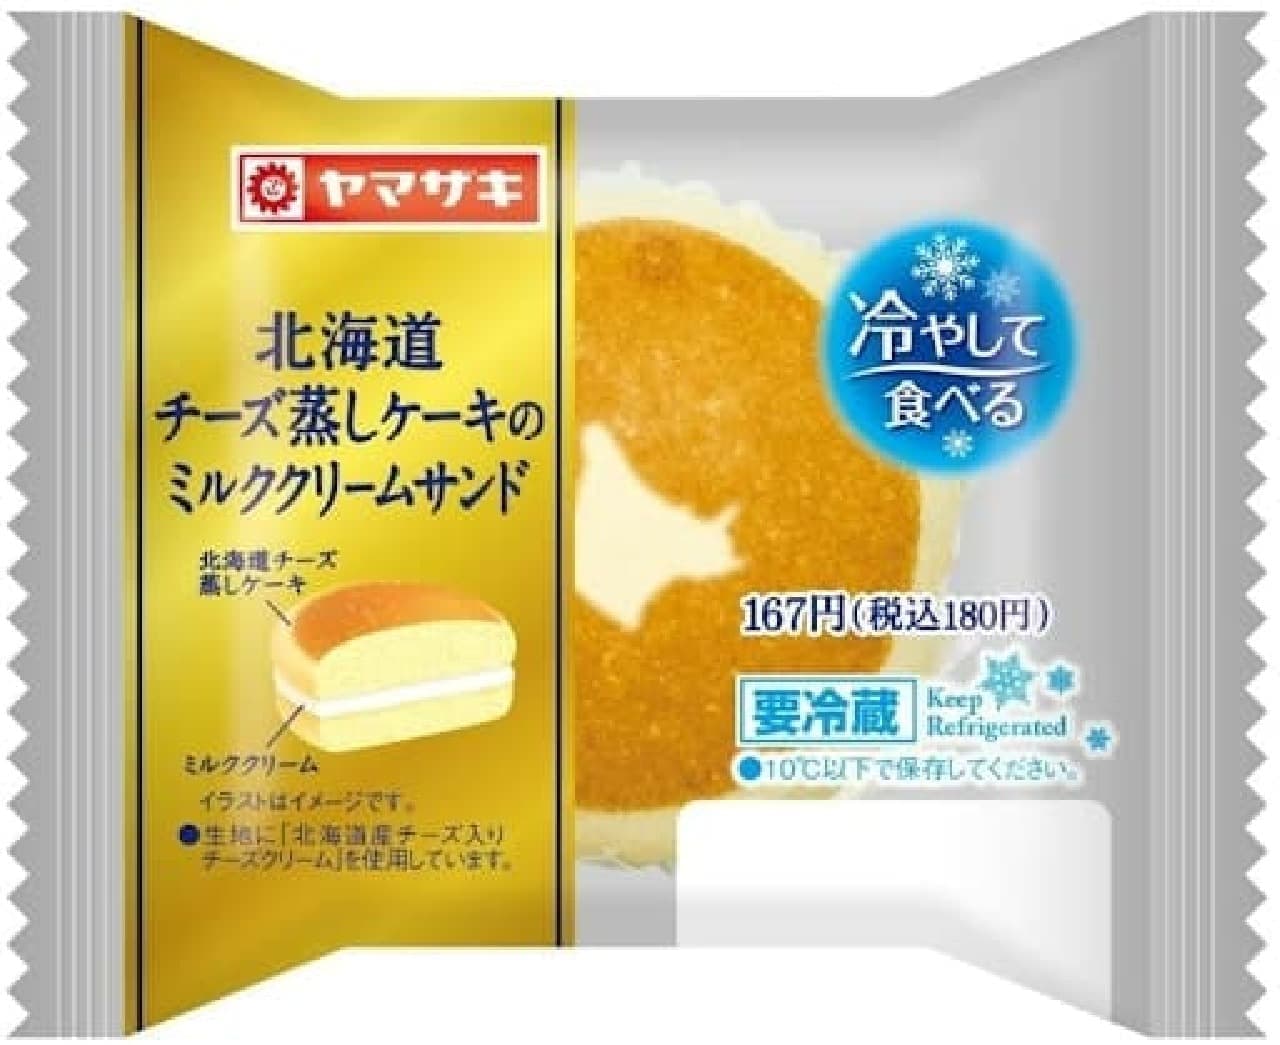 ファミリーマート「北海道チーズ蒸しケーキのミルククリームサンド」